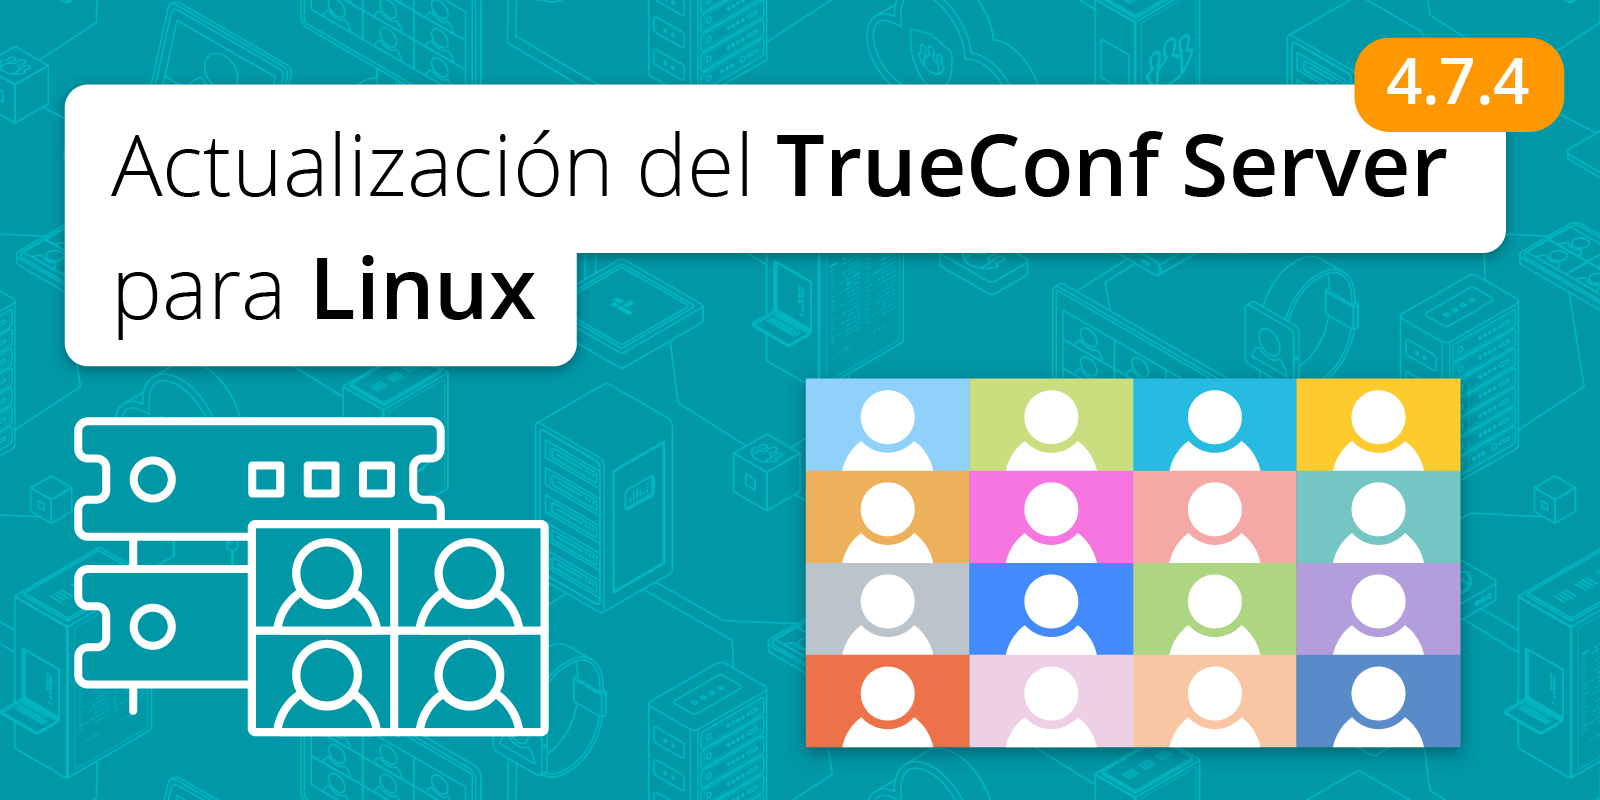 TrueConf Server 4.7.4 para Linux: compatibilidad con Debian 11 1